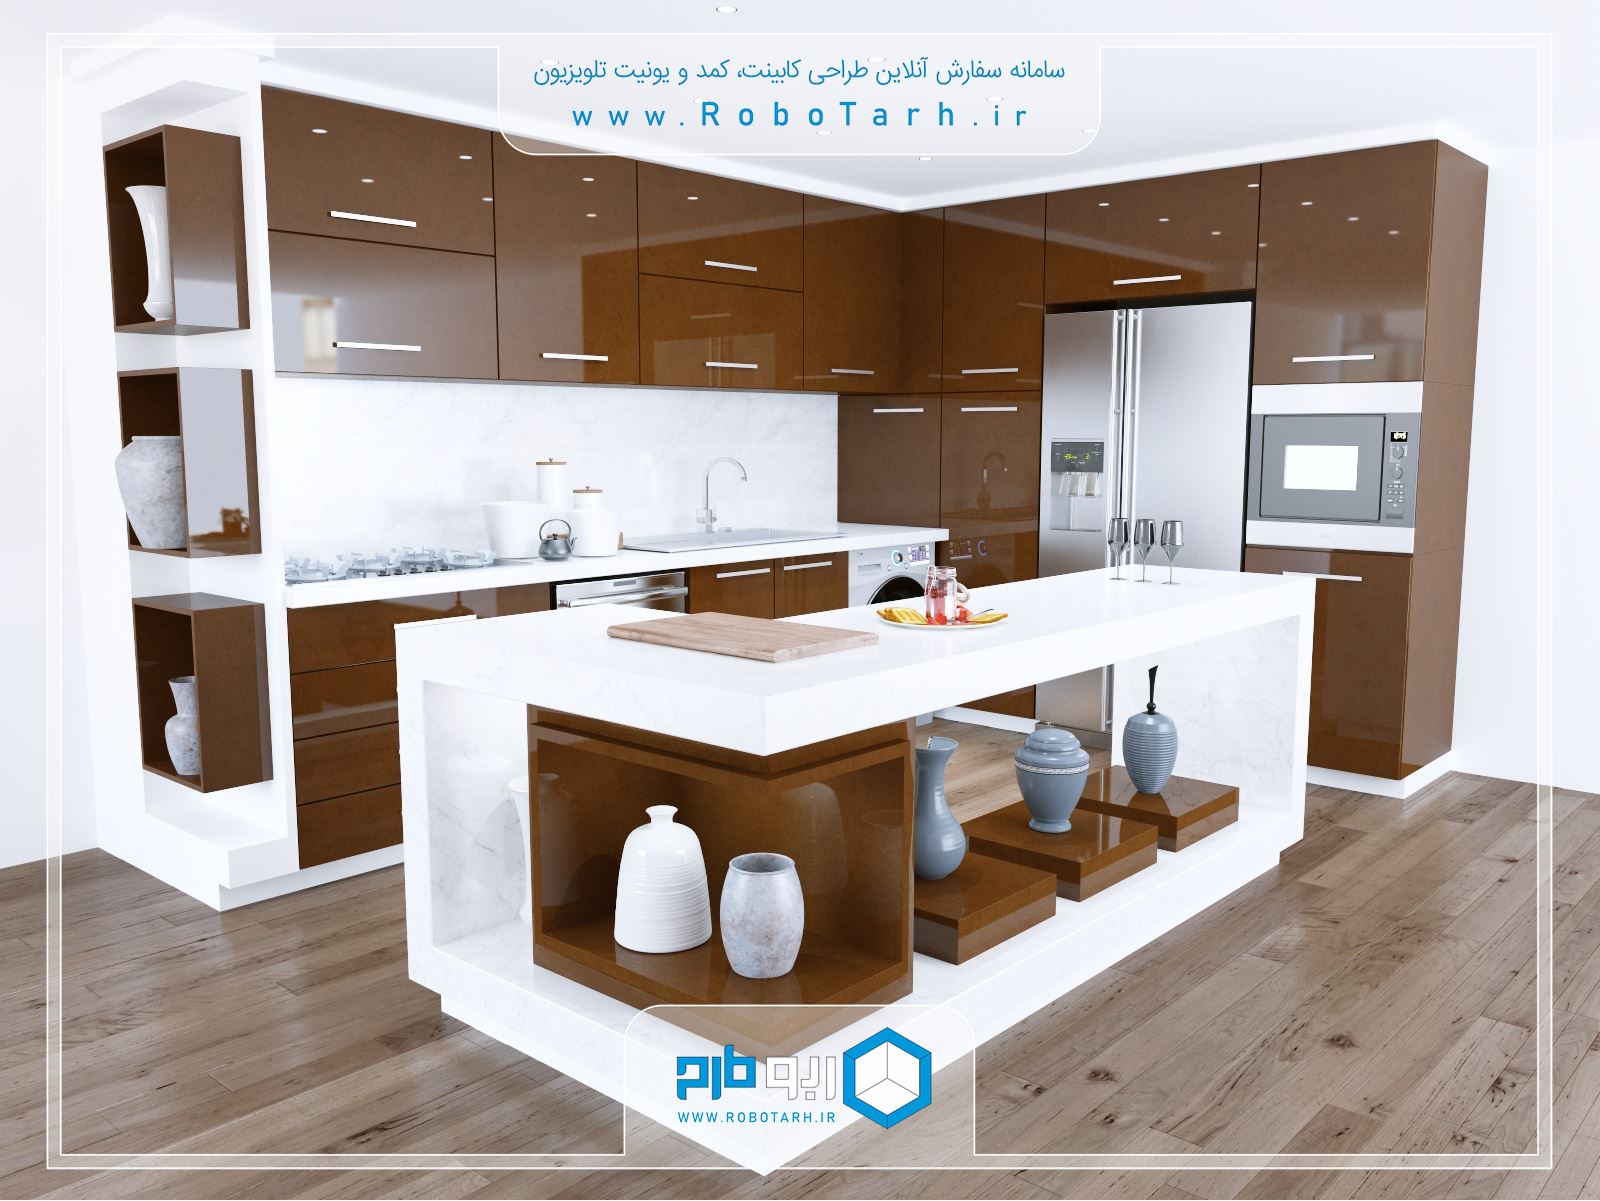 طراحی کابینت آشپزخانه ای به سبک مدرن و رنگ قهوه ای براق با چیدمان ال شکل - ربوطرح